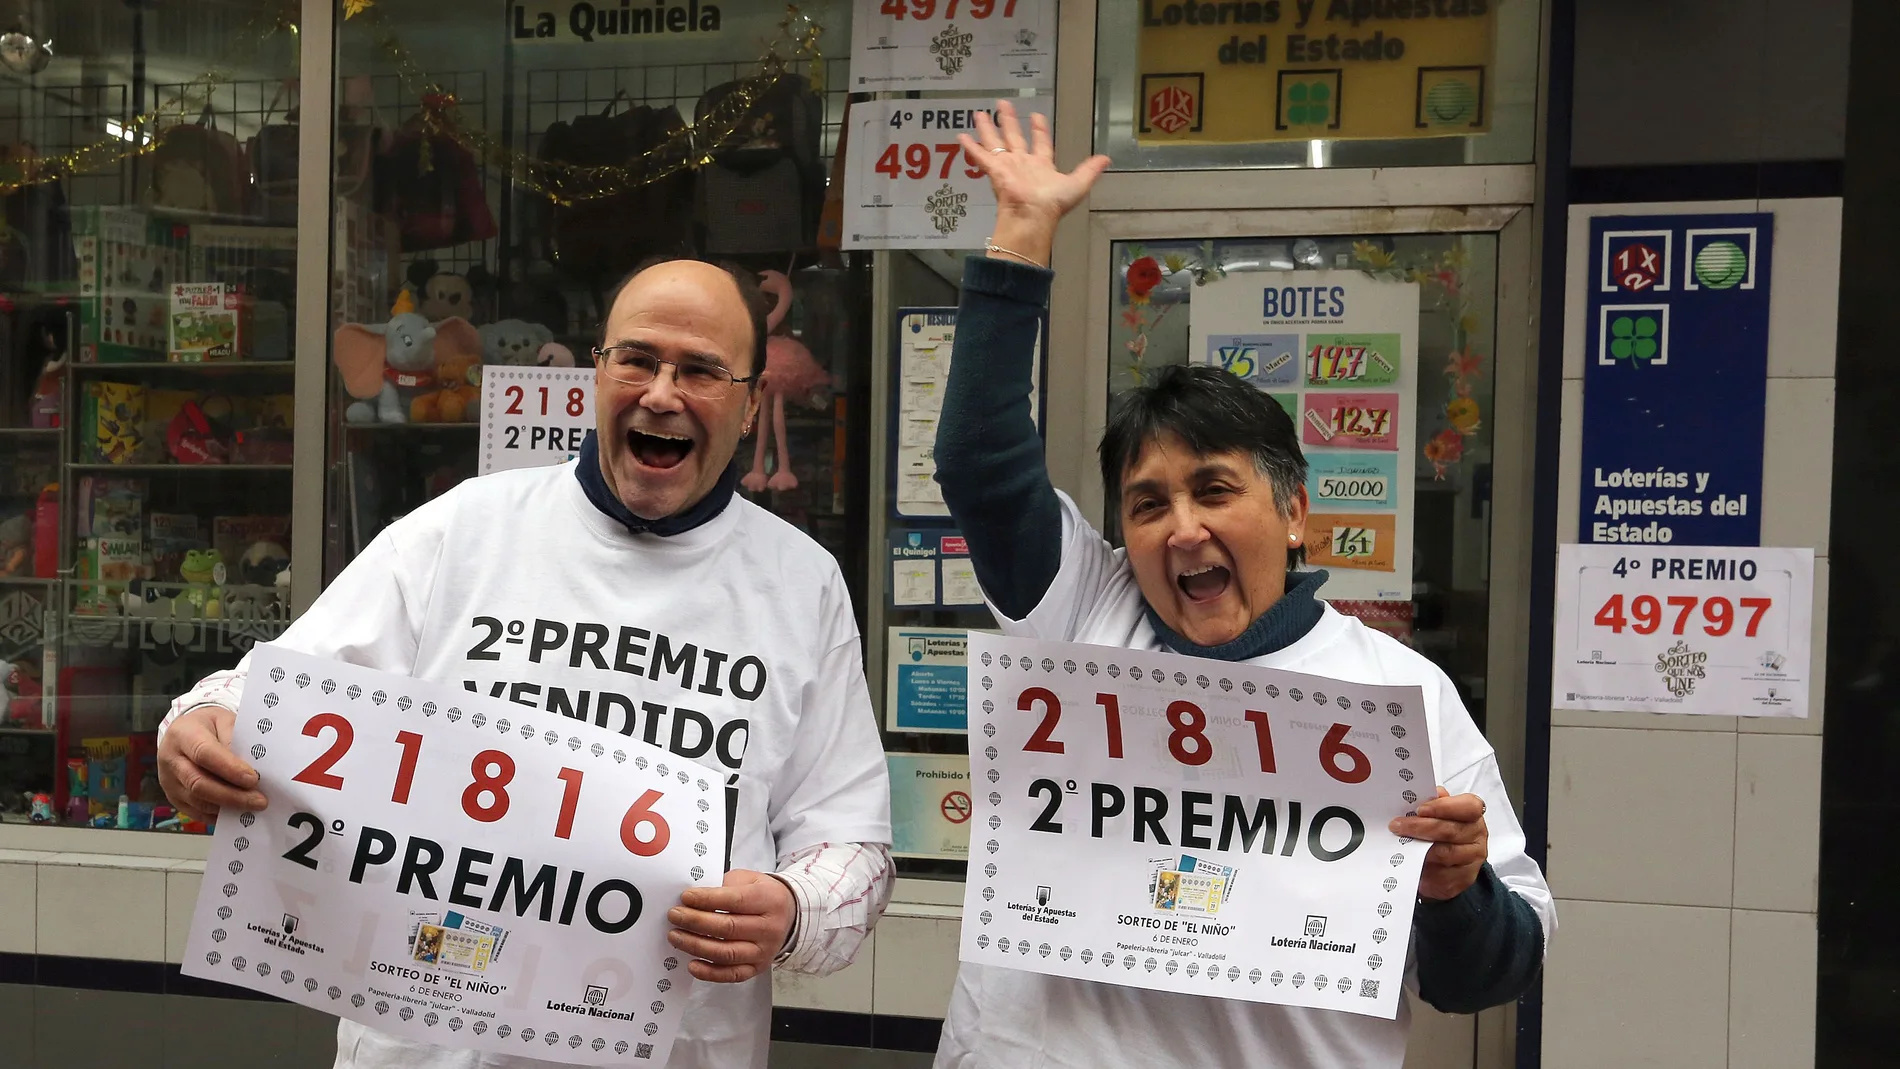 Los propietarios del punto de venta donde se vendió el número 21.816 en Valladolid, se felicitan tras conocer que ese número ha sido agraciado con el segundo Premio de la Lotería de El Niño